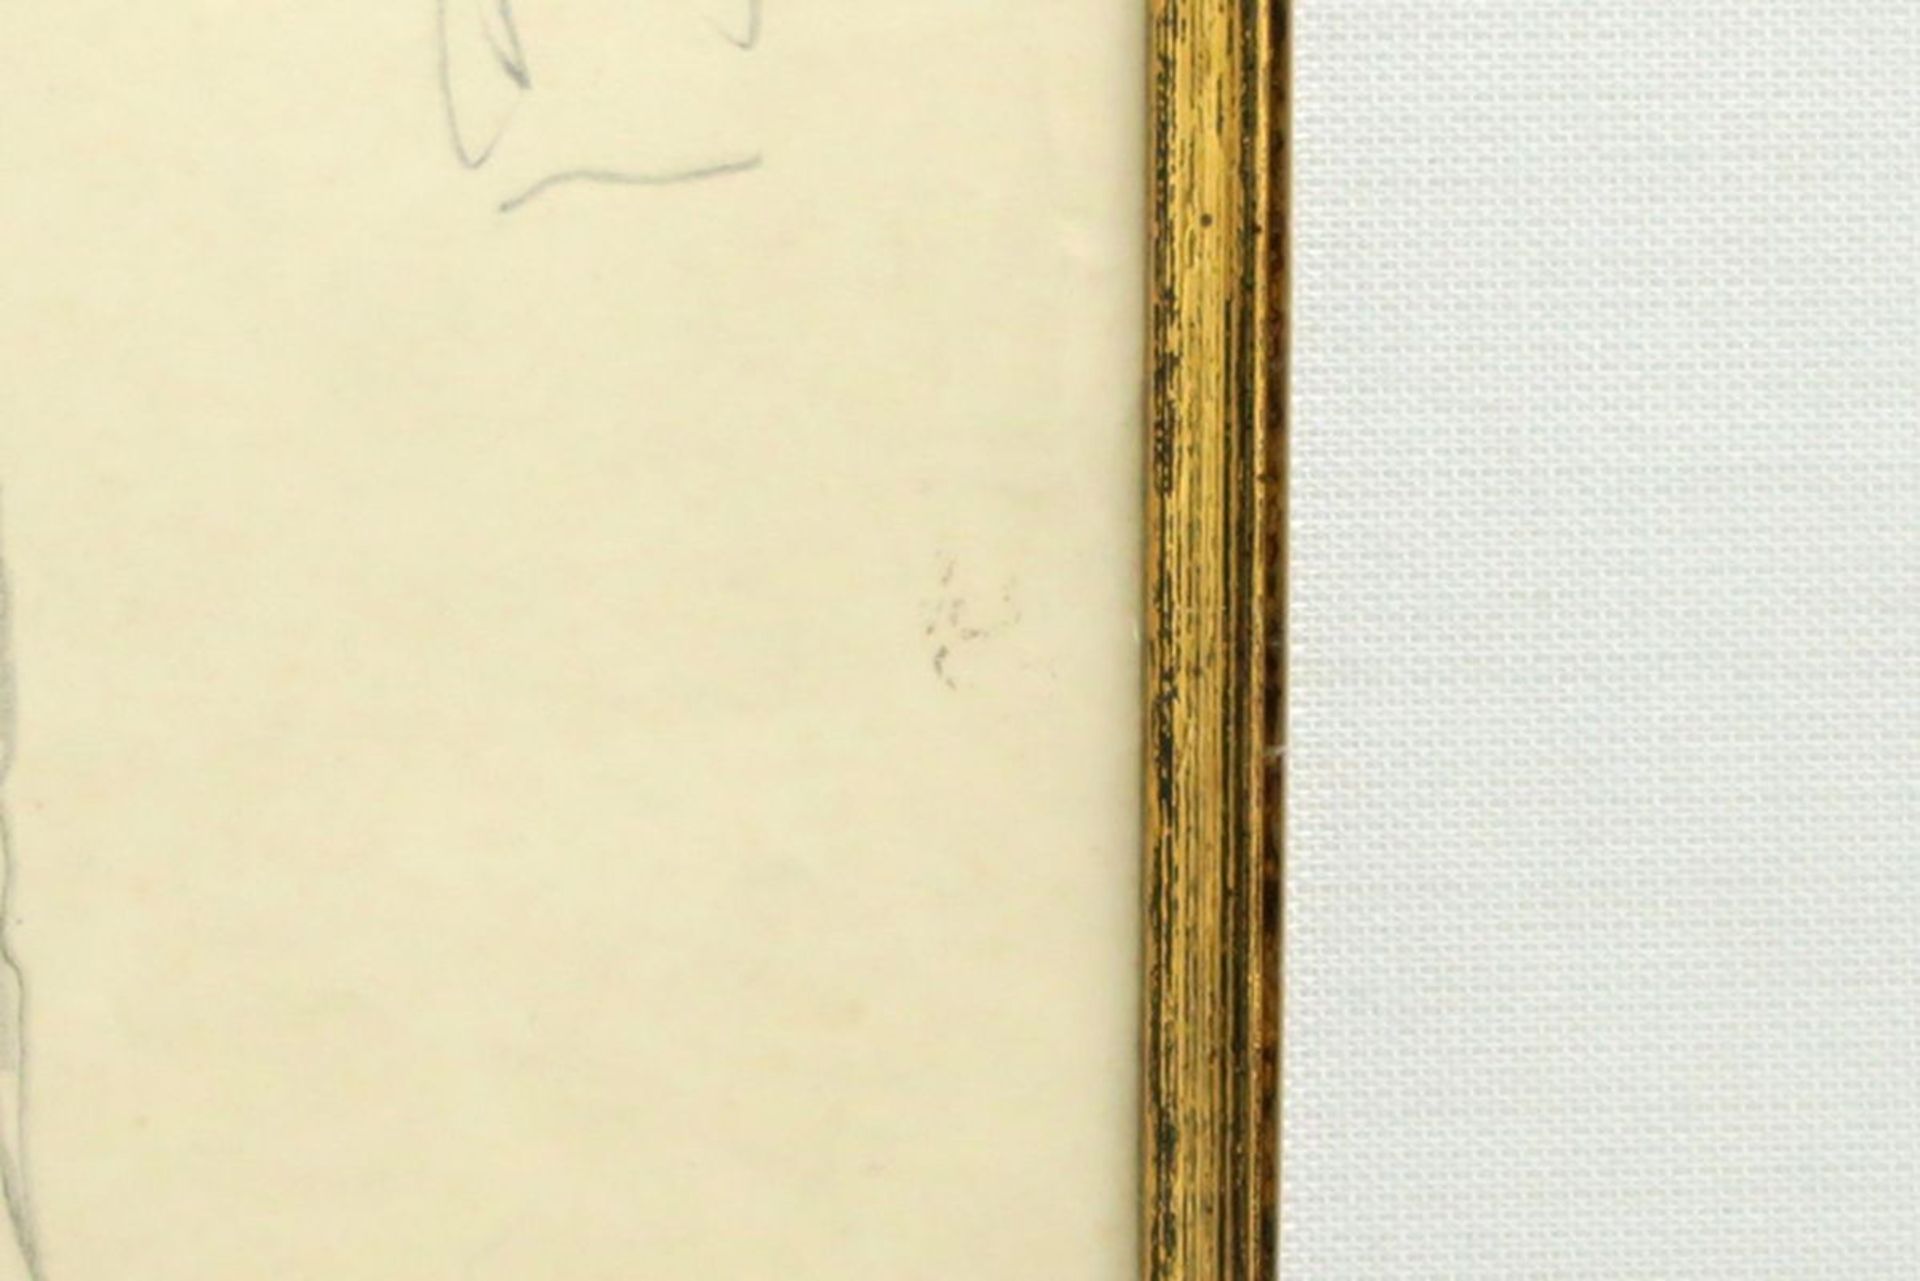 VAN DEN BERGHE FRITS (1883 - 1939) studietekening voor een man, een ontwerp voor een [...] - Bild 3 aus 3